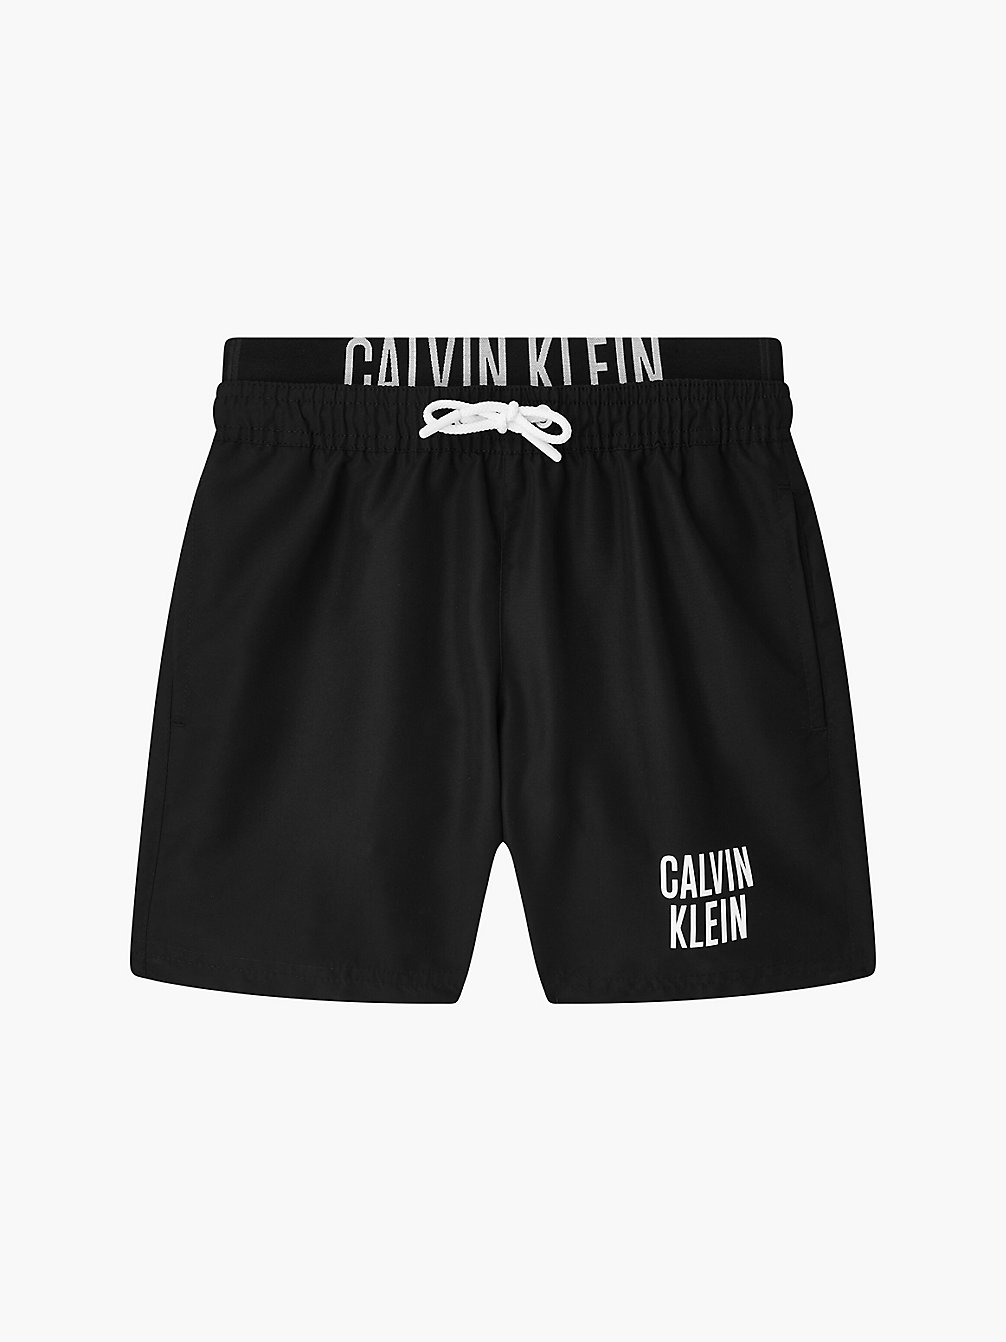 PVH BLACK Badeshorts Für Jungen - Intense Power undefined boys Calvin Klein